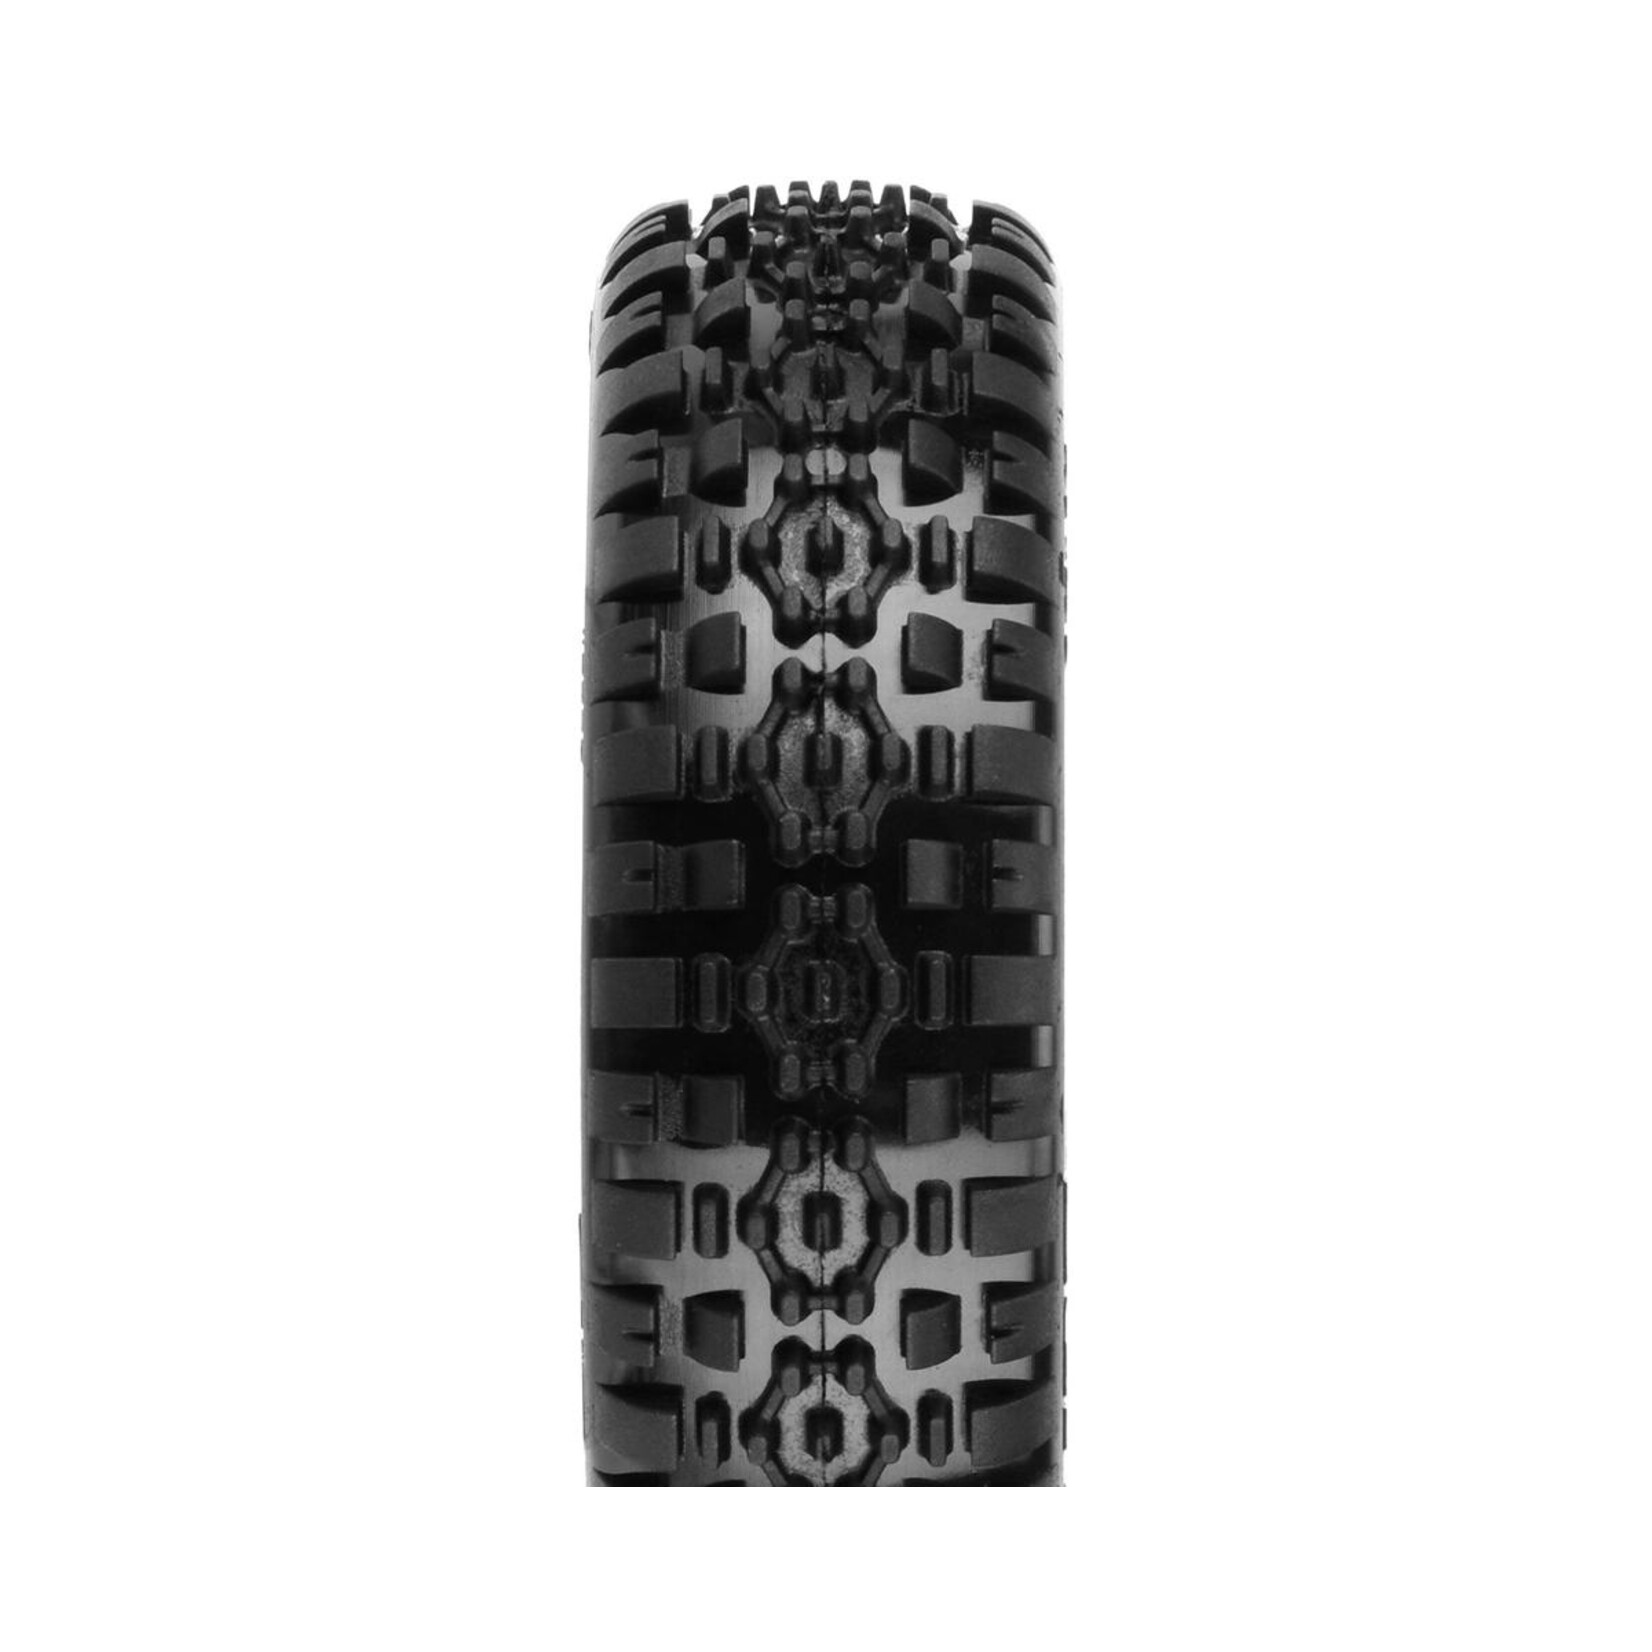 Pro-Line Pro-Line Hexon Carpet 2.2" 2WD Front Buggy Tires (2) (C4) #8299-103